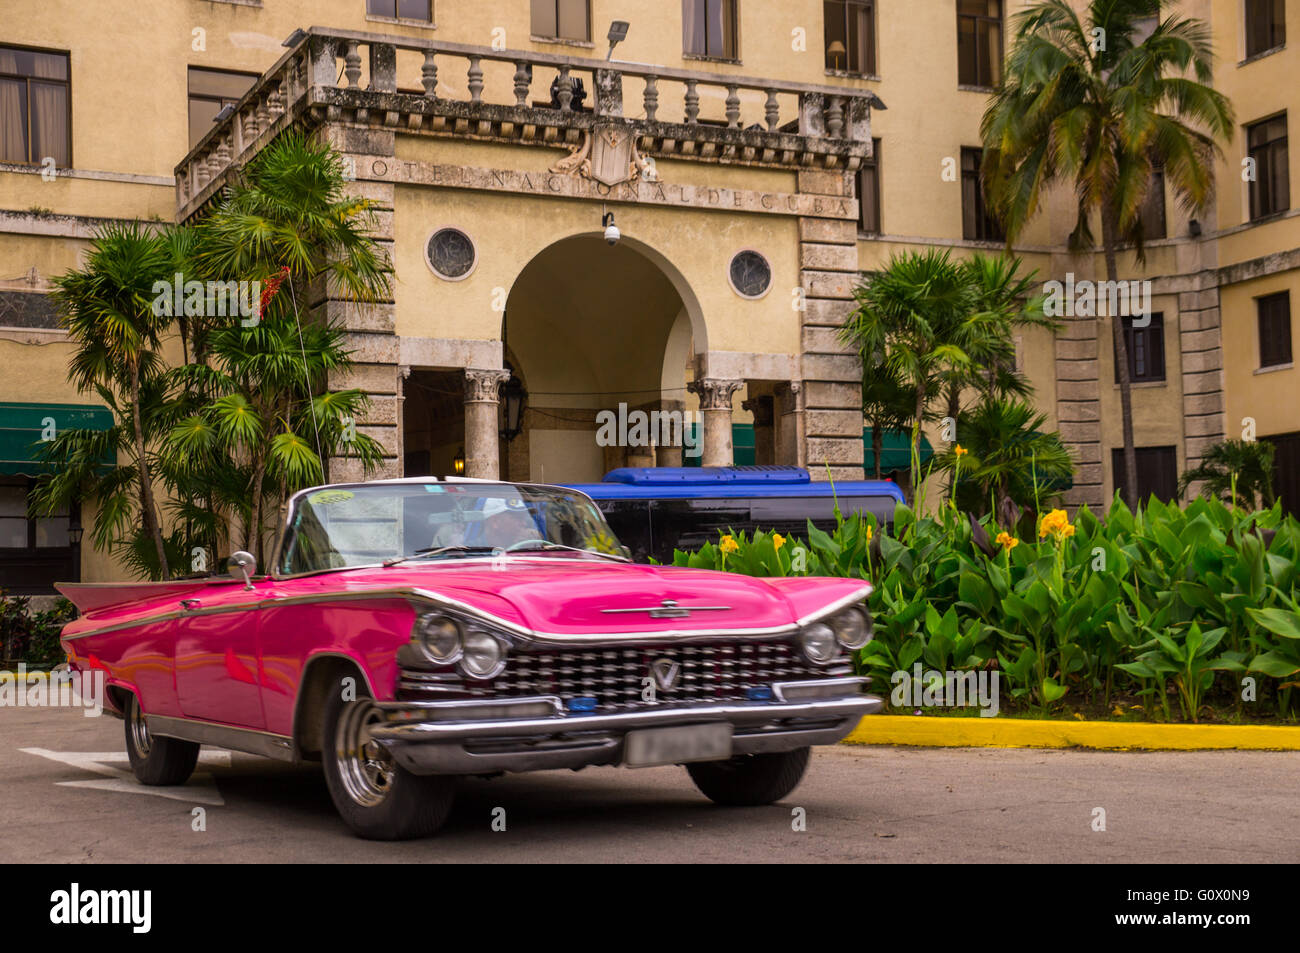 Un rosso oldtimer unità nella parte anteriore del famigerato Havanas Hotel national che conserva il fascino del Golden 20s - Havana, Cuba in Ja Foto Stock